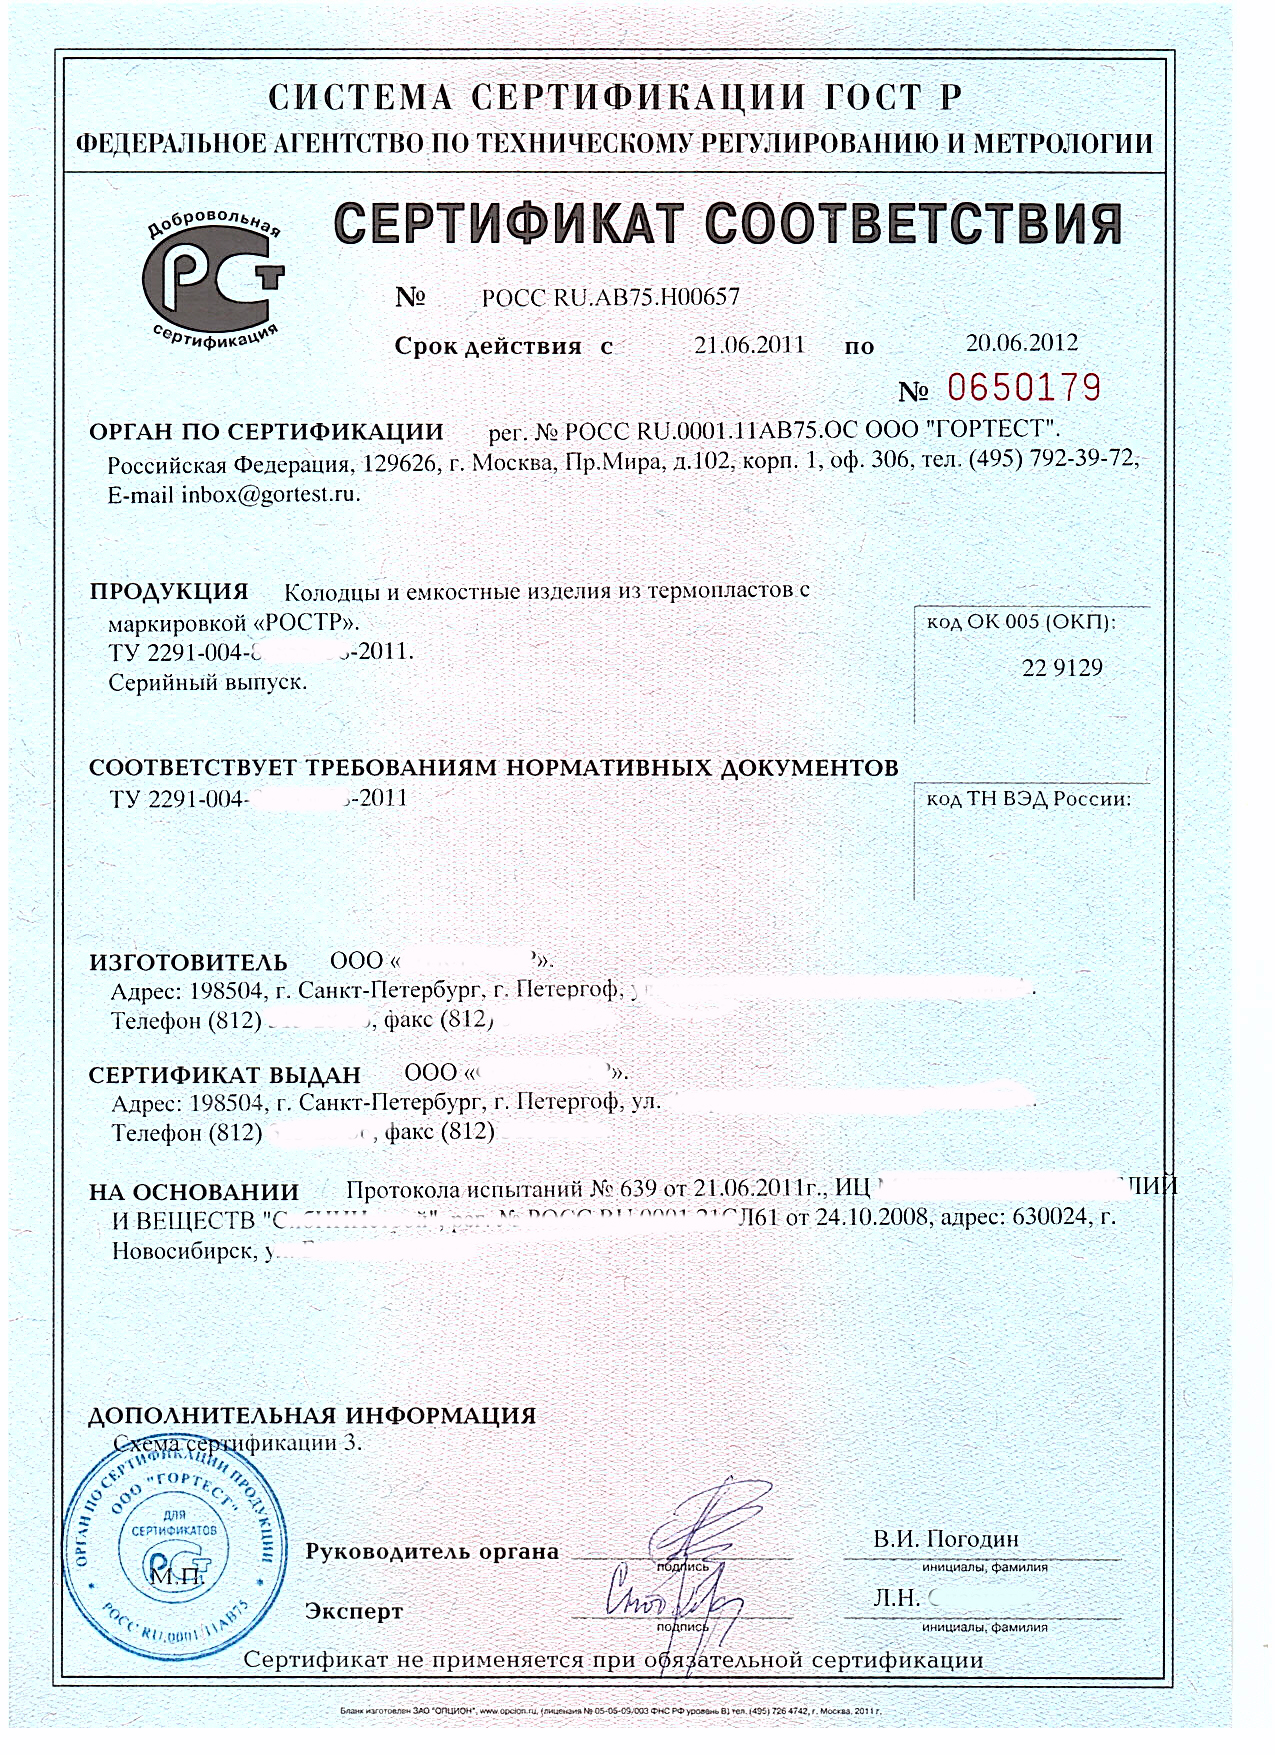 Образец Сертификата соответствия по 44-ФЗ, 223-ФЗ (добровольная сертификация)